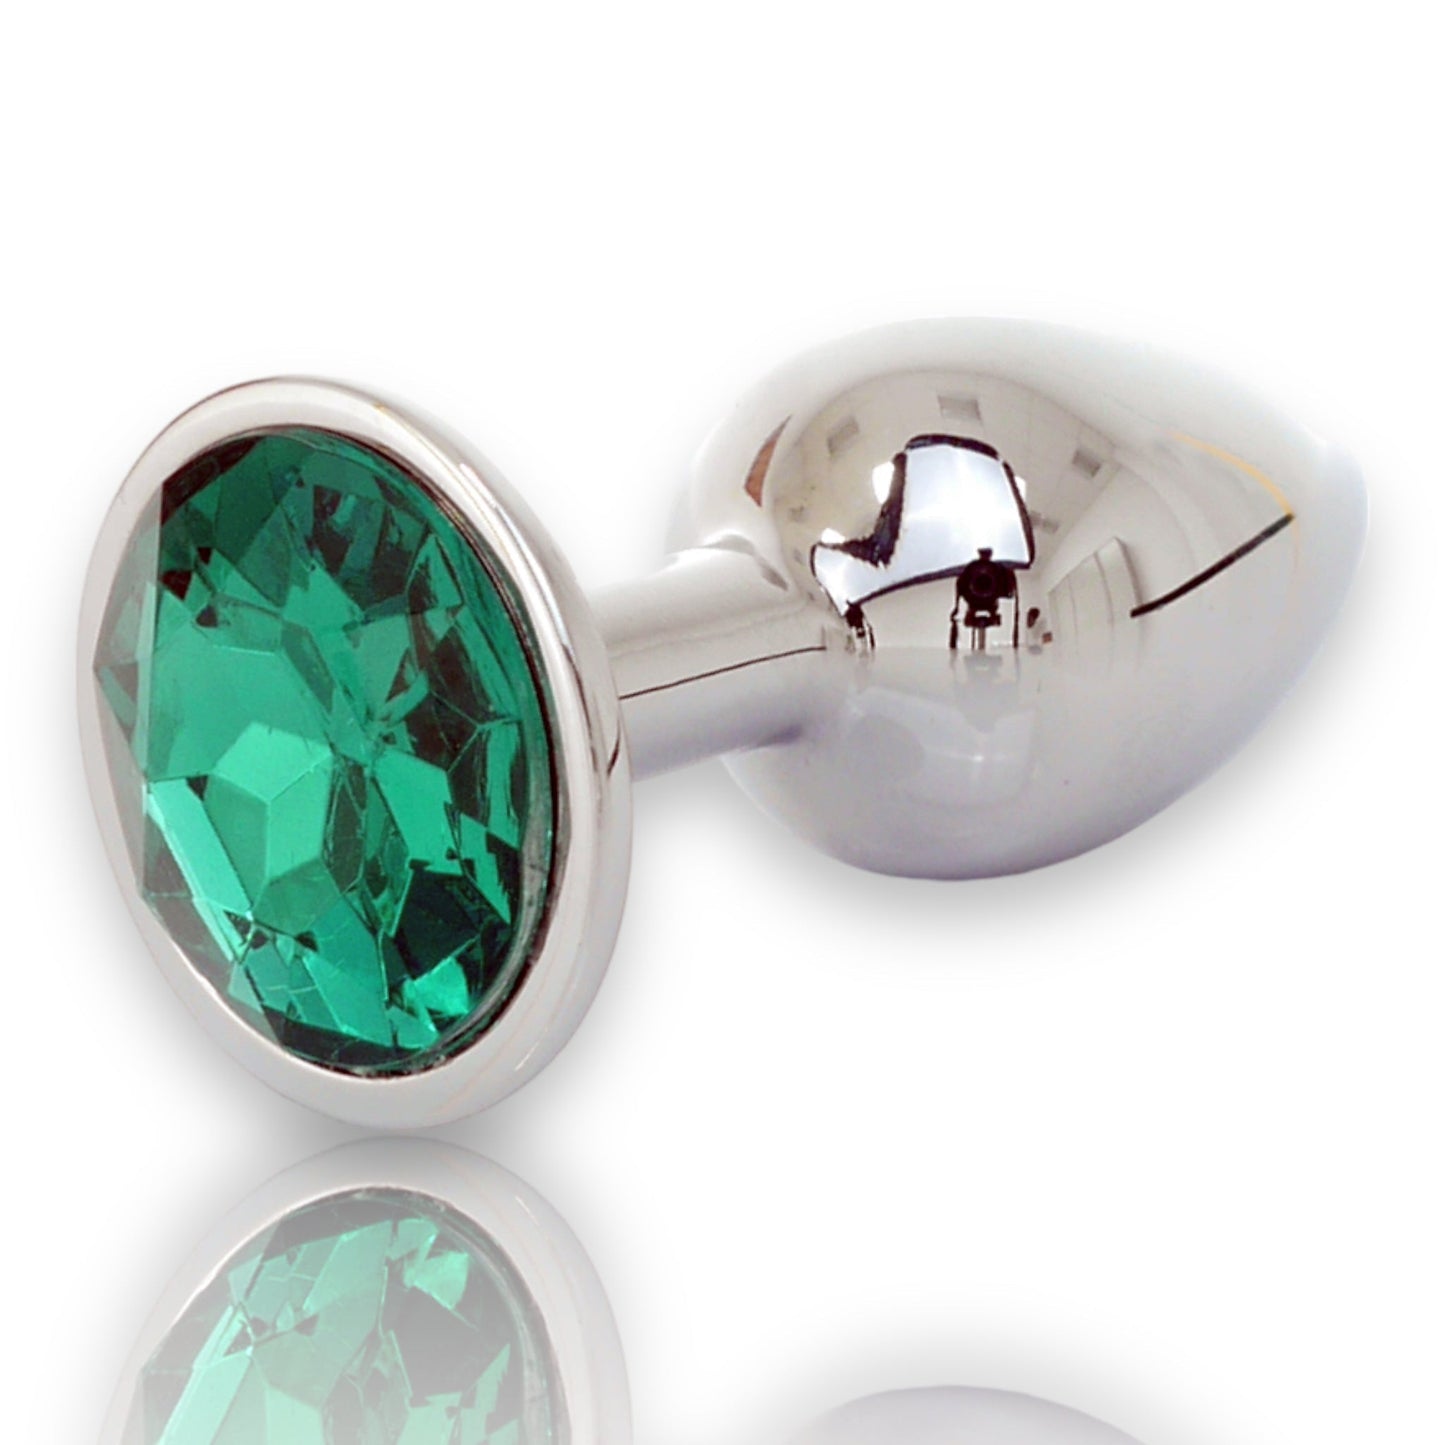 Bossoftoys - Silver Plug - Diamond Stone - Length 7 cm - Dia 2,7 cm - 4 Colours